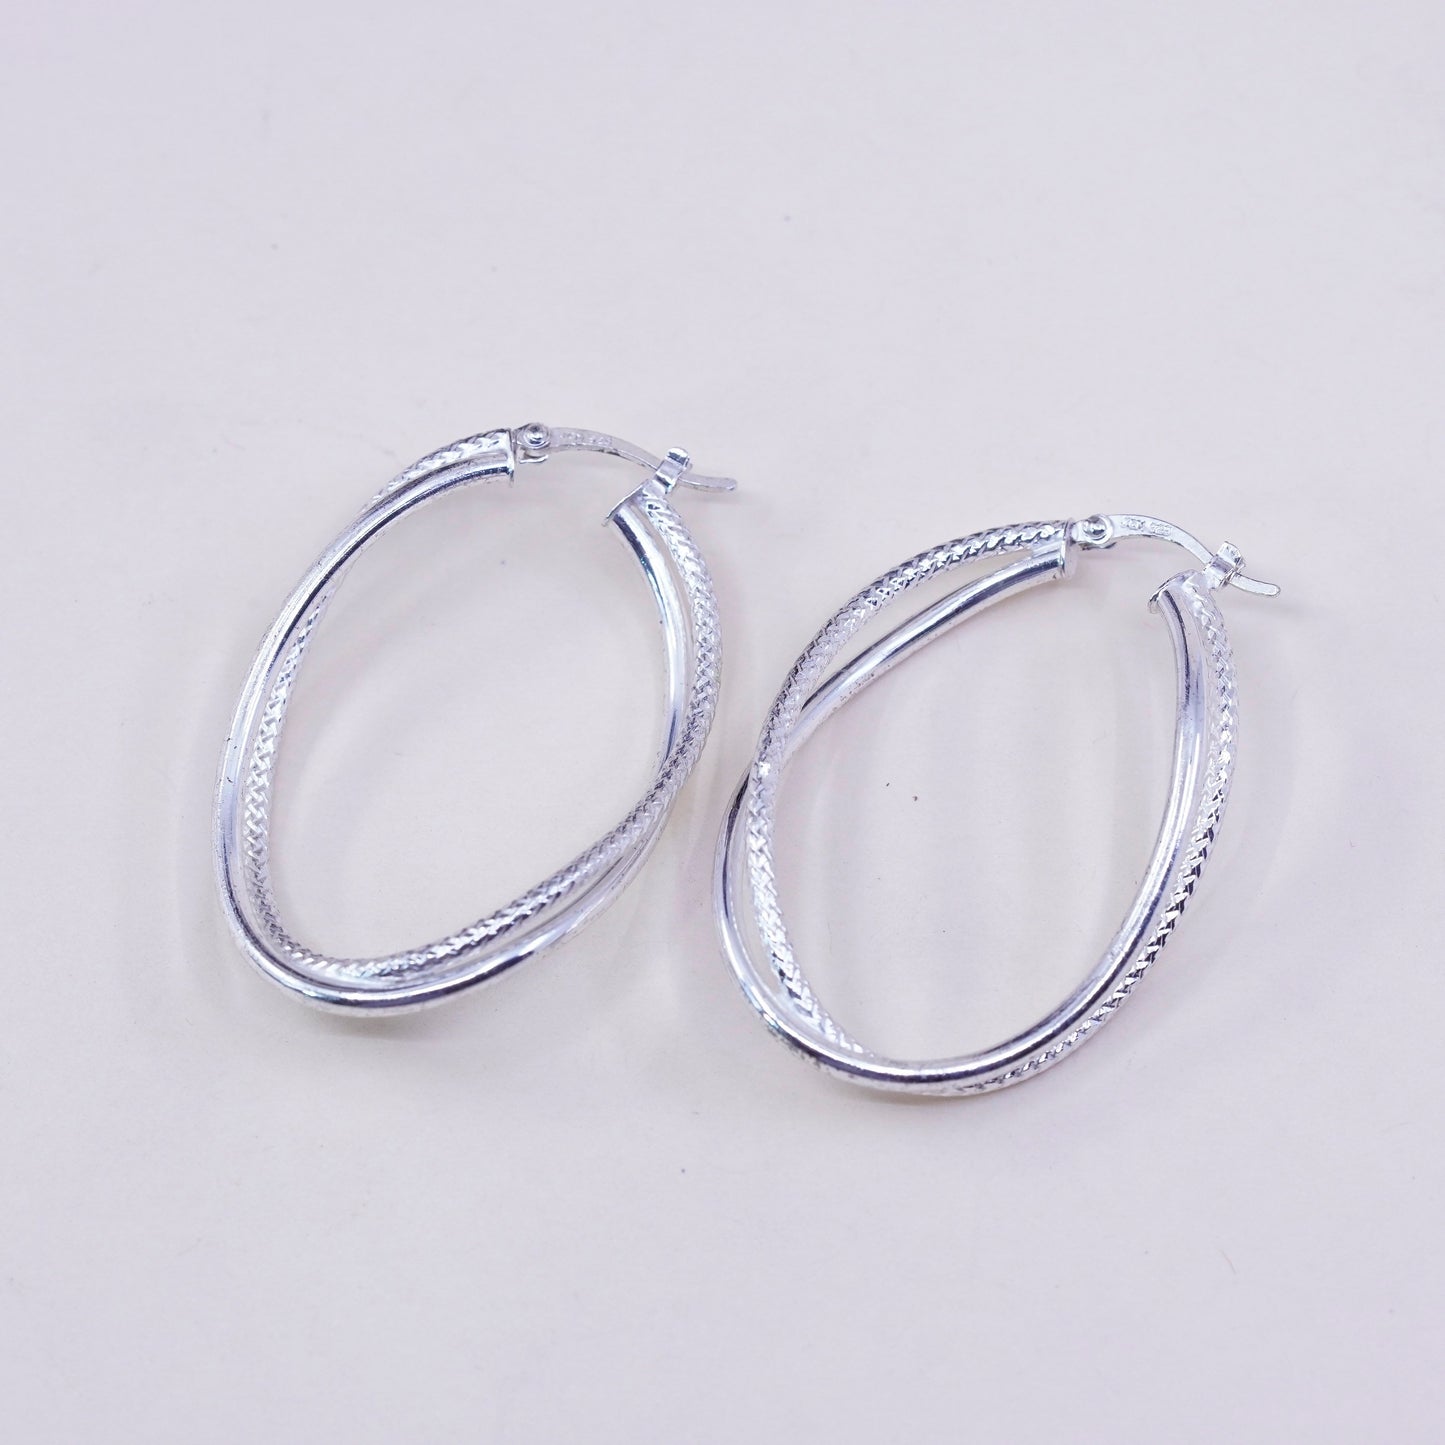 1.75”, JCM sterling silver loop earrings, primitive twisted cable hoops, huggie